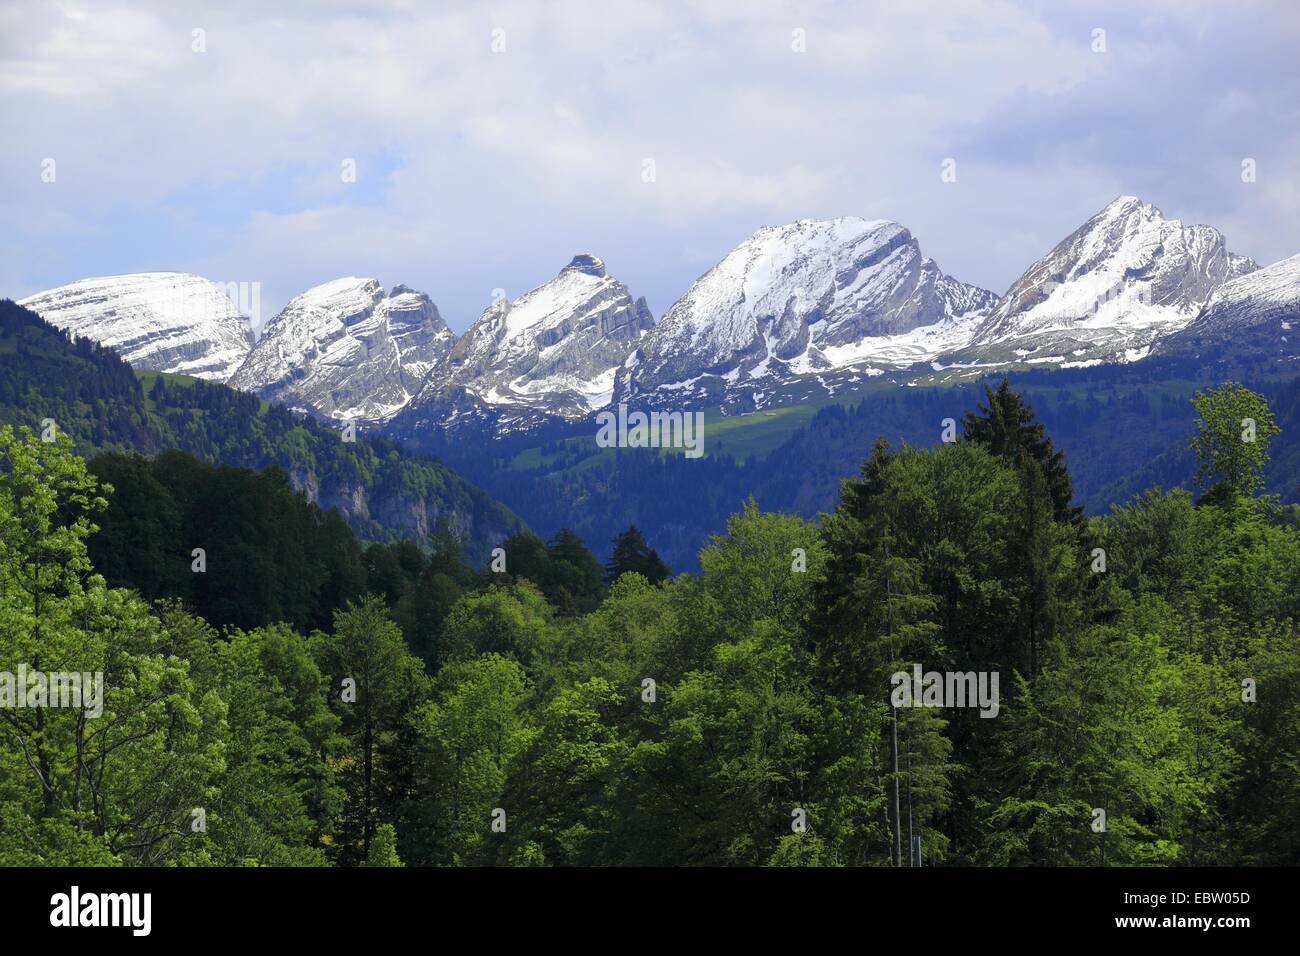 the mountain range Churfirsten in the Appenzell Alps, Switzerland, St. Gallen, Toggenburg Stock Photo